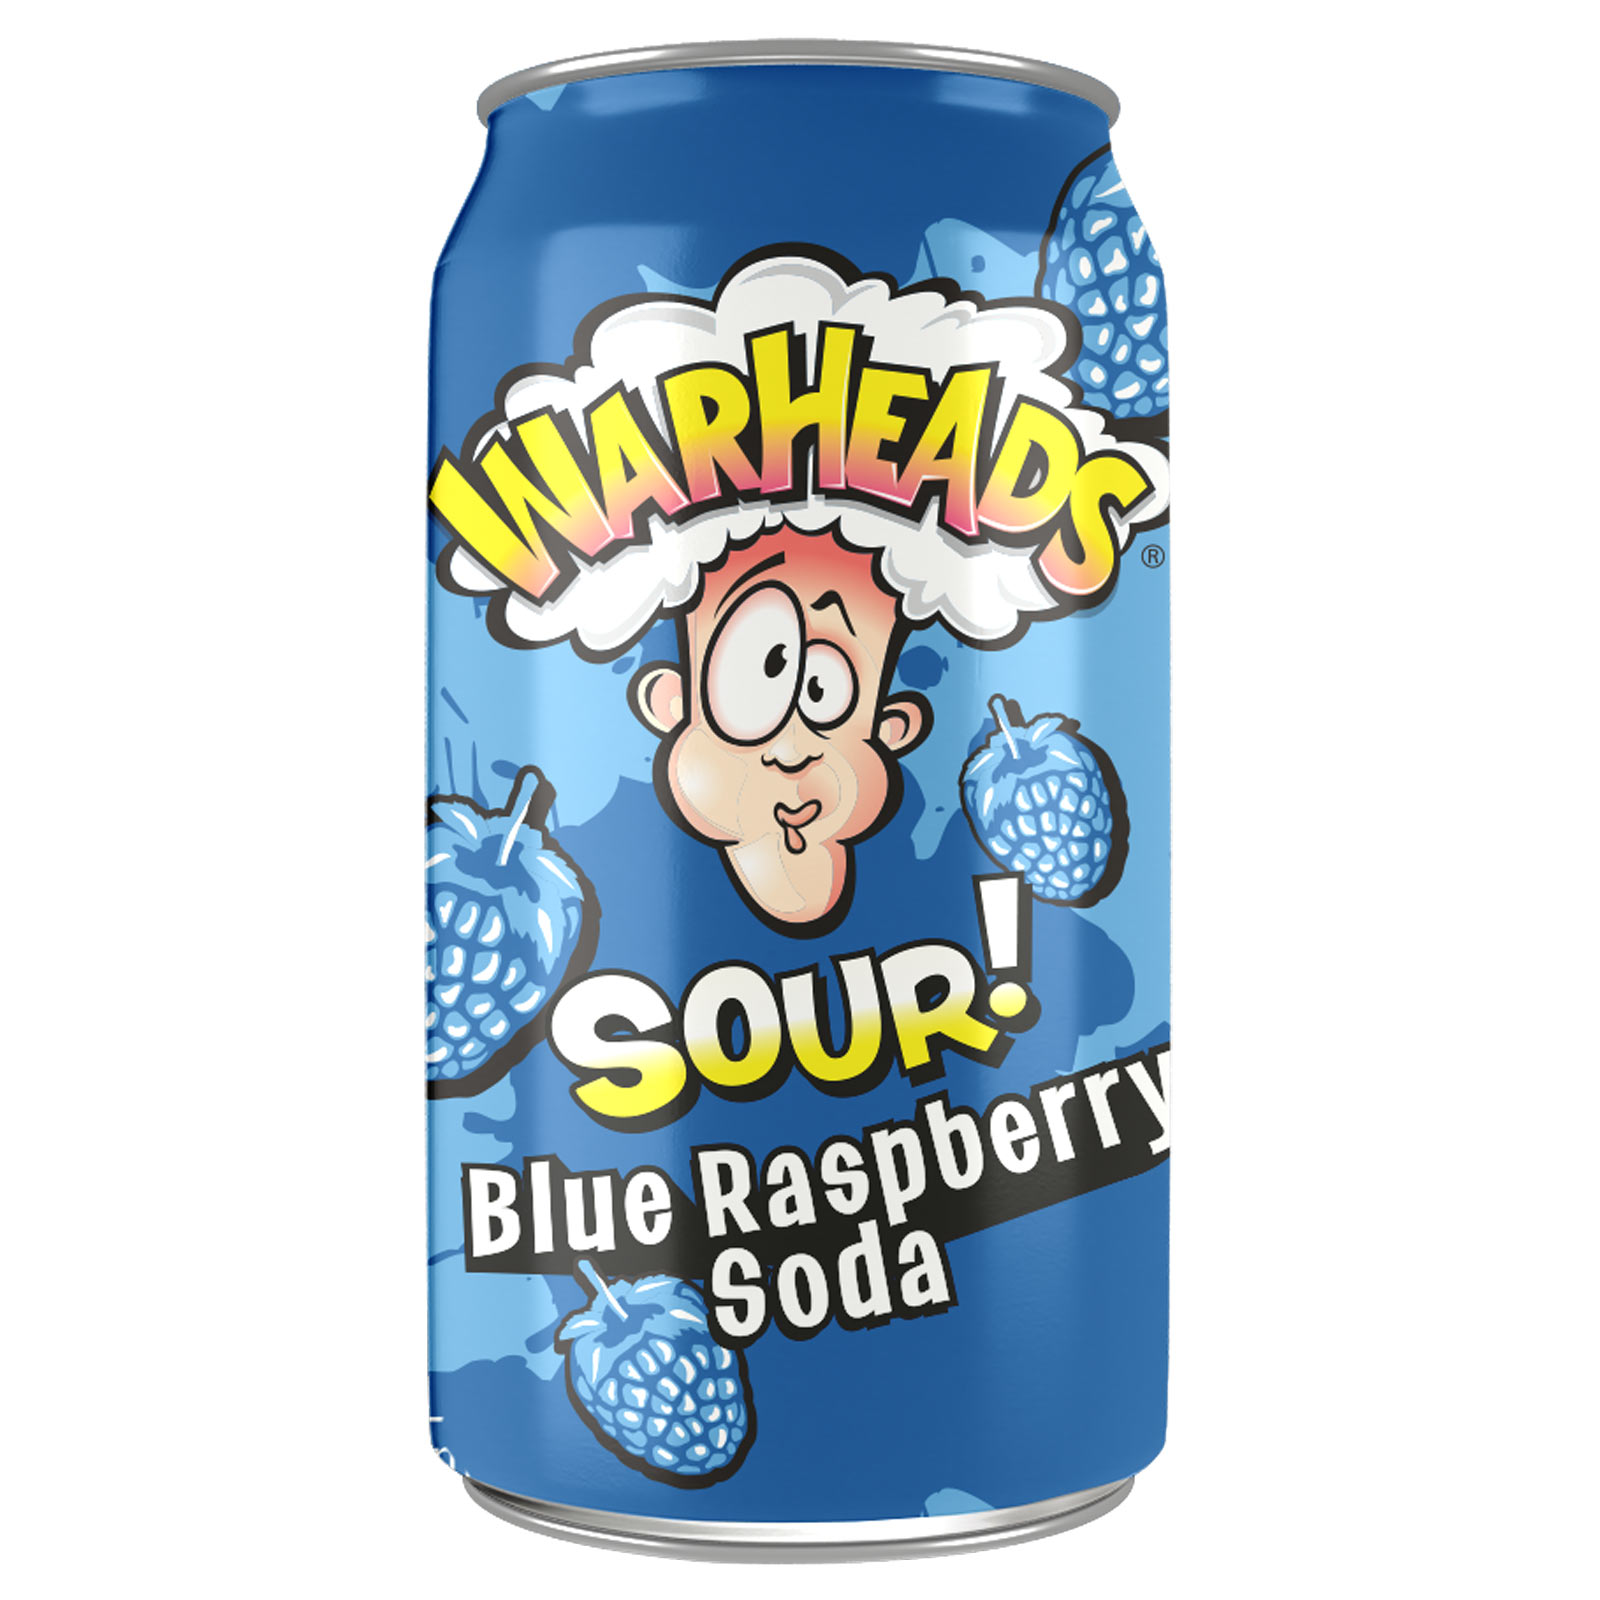 Warheads Sour Blue Raspberry Soda  Od nejoblíbenější americké značky super kyselých bonbónů přichází fantastické limonády s ovocnou příchutí s kyselým nádechem, který vás ohromí!
Kyselá limonáda Warheads s příchutí  ...